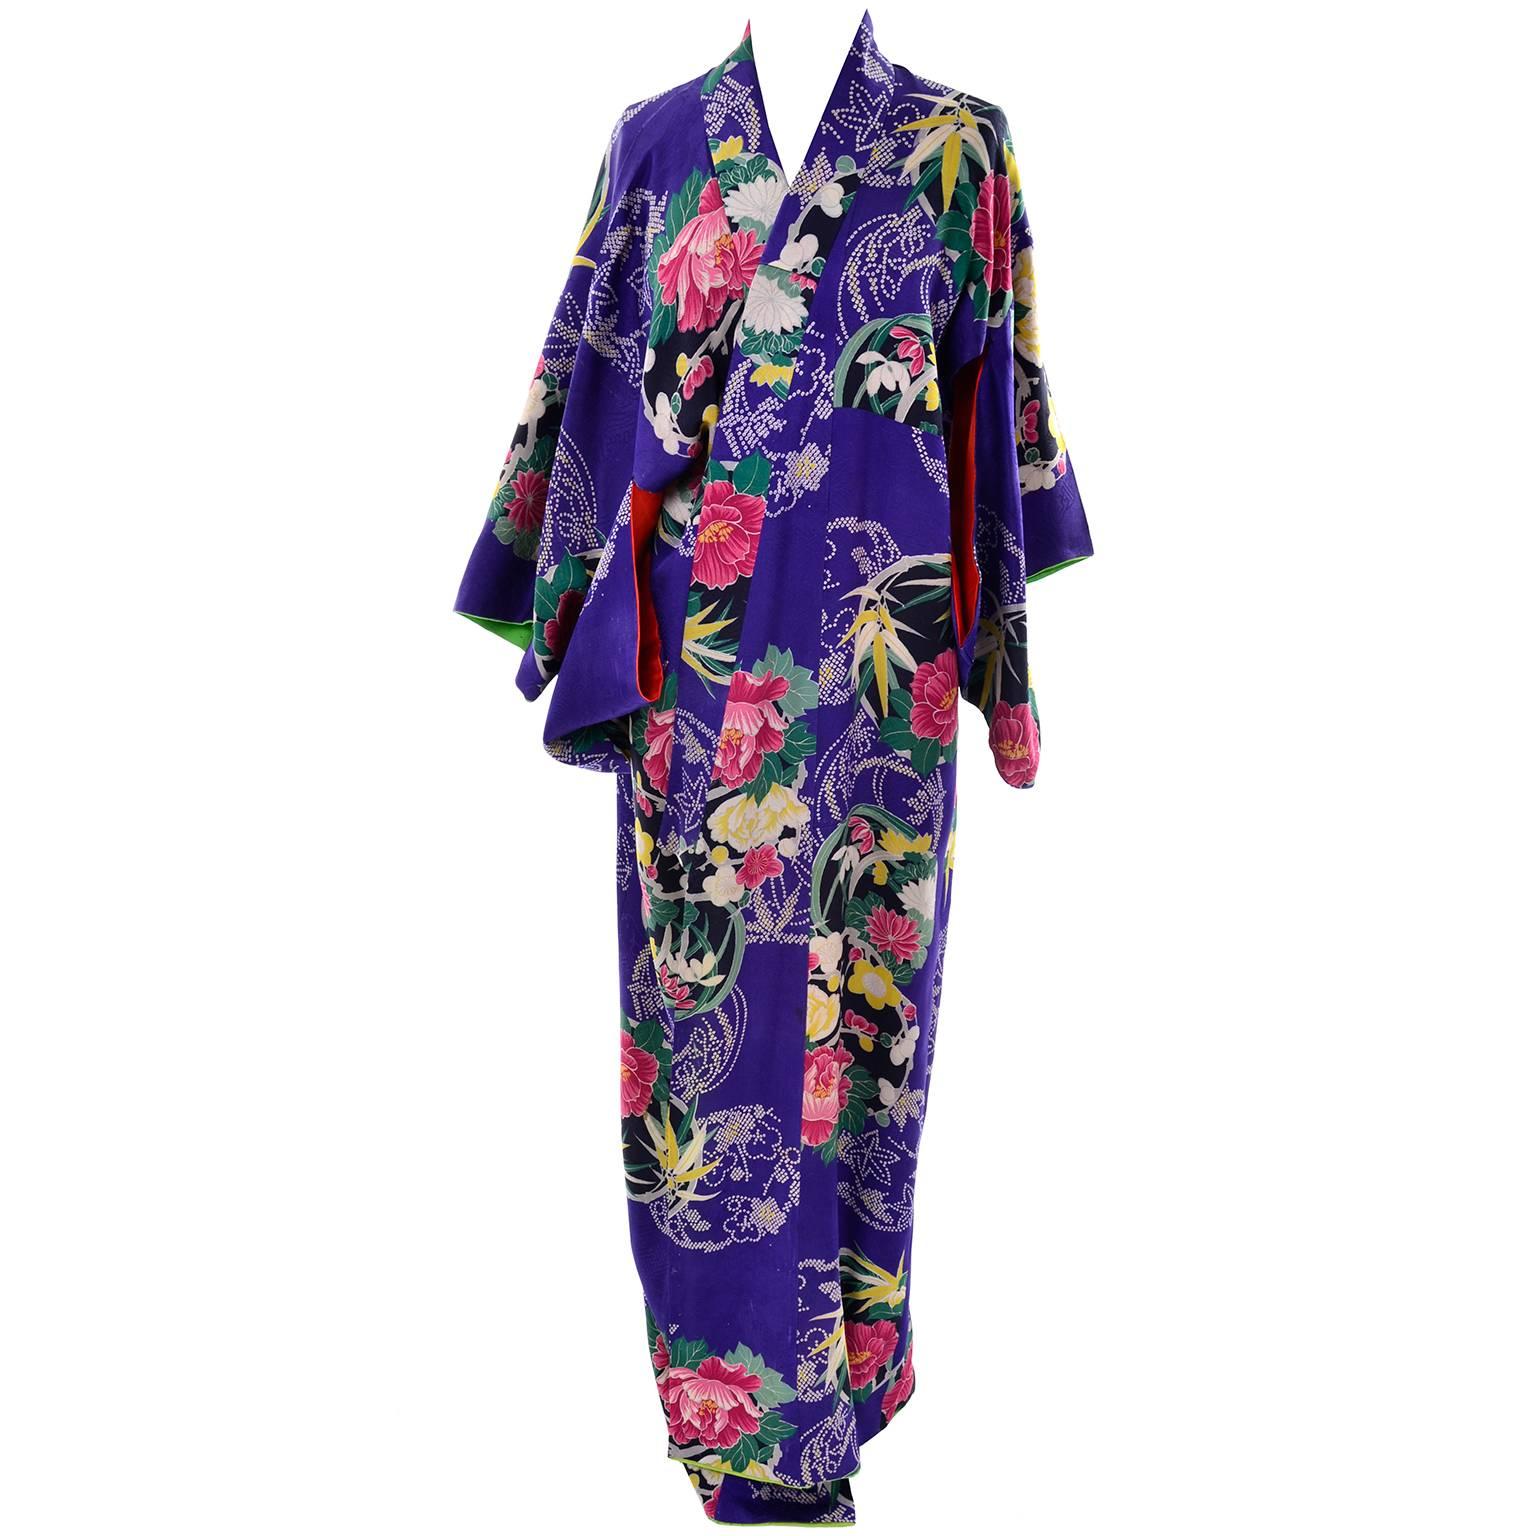 Dieser wunderschöne königsblaue, geblümte Seidenkimono stammt aus einem Nachlass mit asiatischen Textilien und Kleidungsstücken, den wir vor einiger Zeit erworben haben. Dieser Kimono hat einen wunderschönen Seidendruck mit Blumen und Blättern und